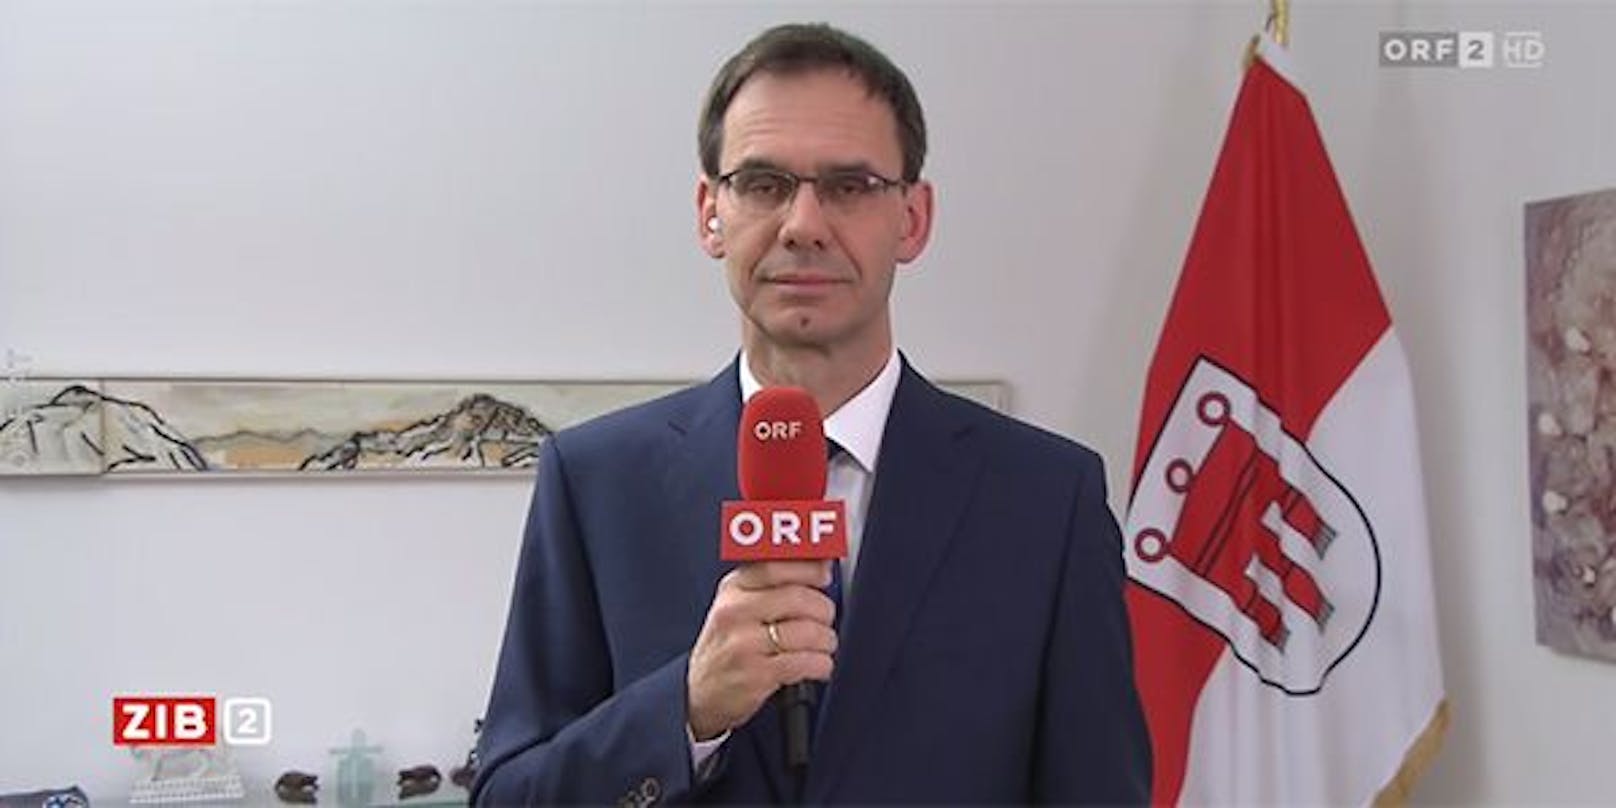 Vorarlbergs Landeshauptmann Markus Wallner in der Video-Schalte in der ORF-"ZiB 2".